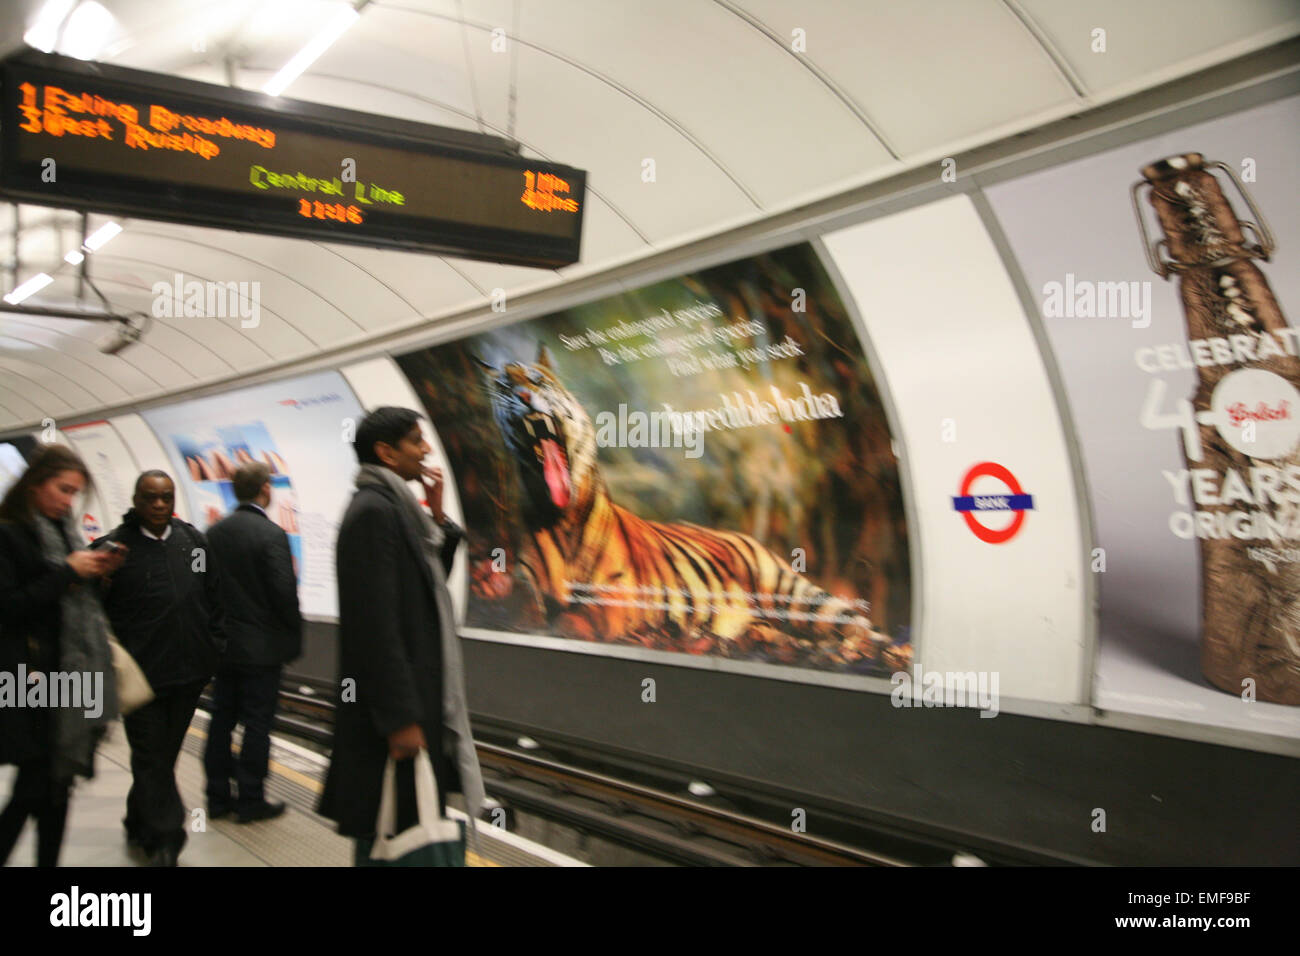 Cartelloni pubblicitari a Londra metropolitana stazione Bank di Londra, Inghilterra. Foto Stock